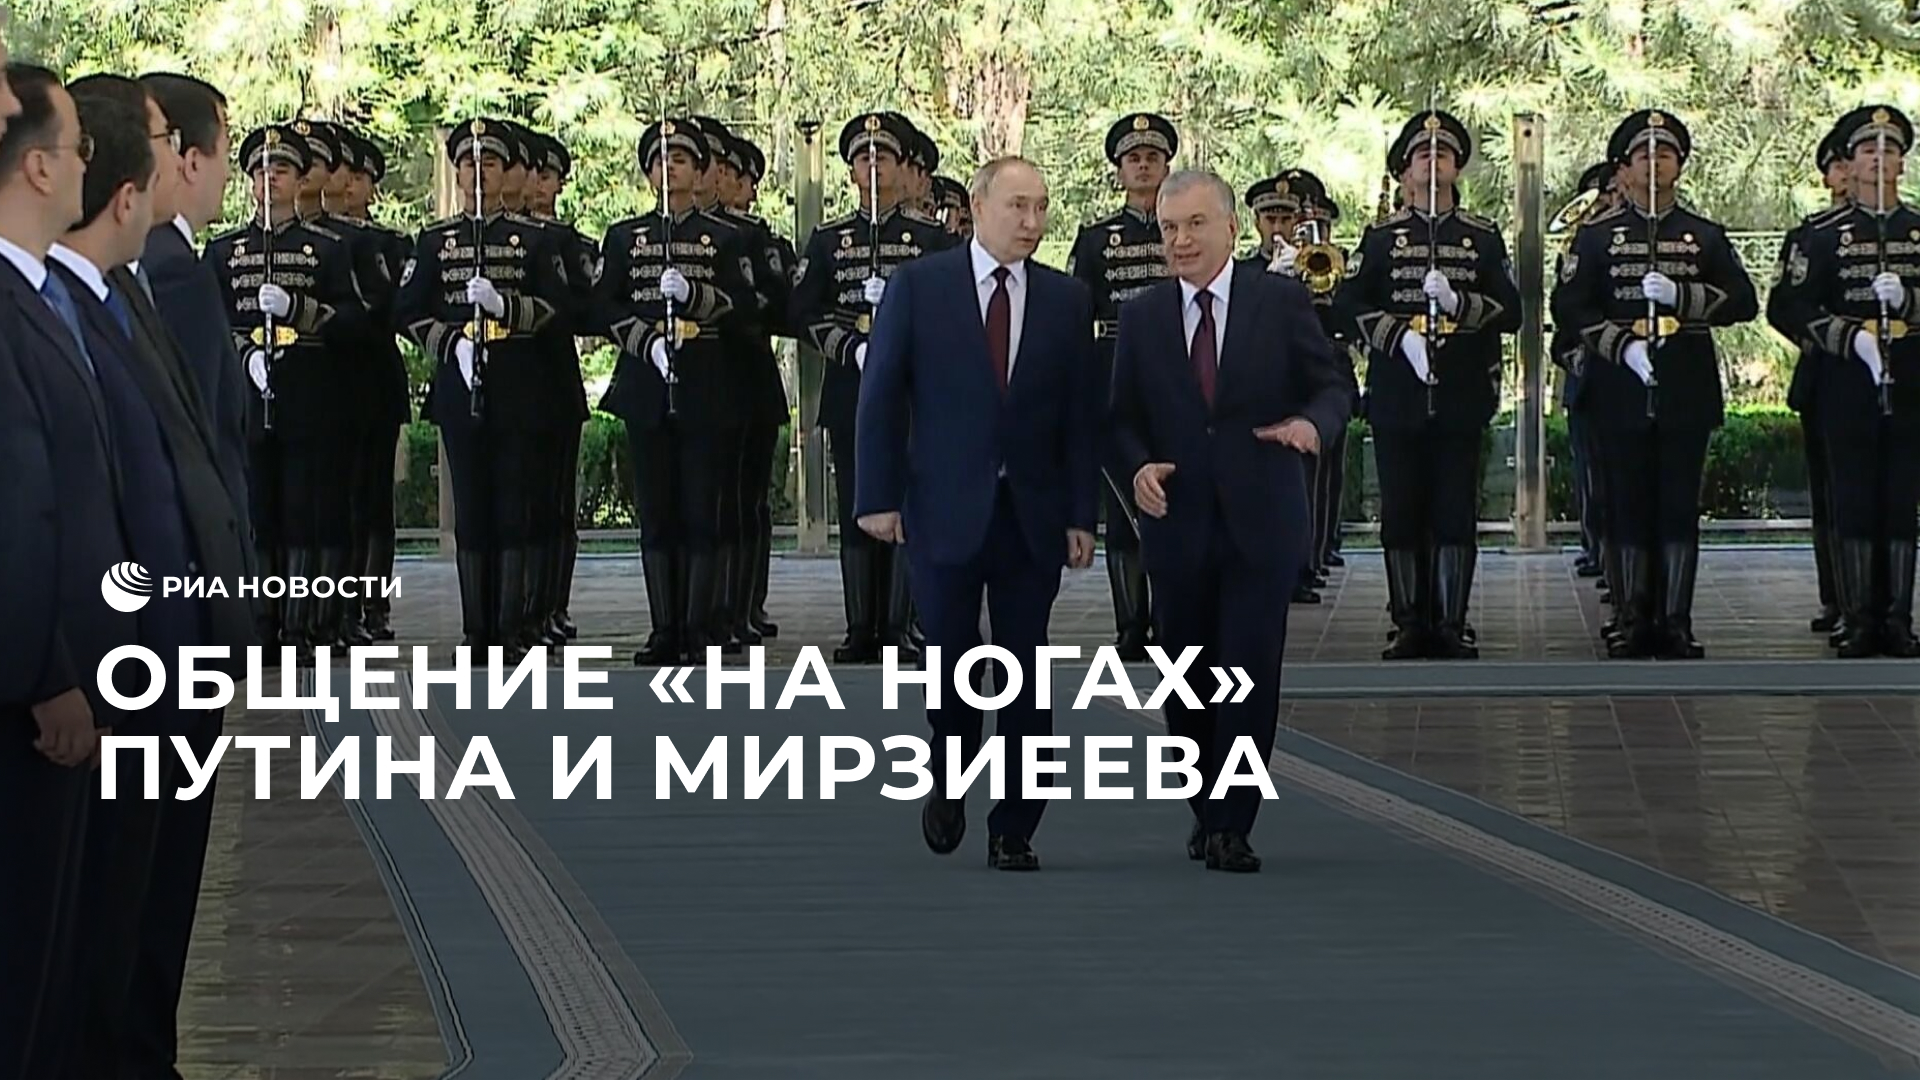 Общение "на ногах" Путина и Мирзиеева